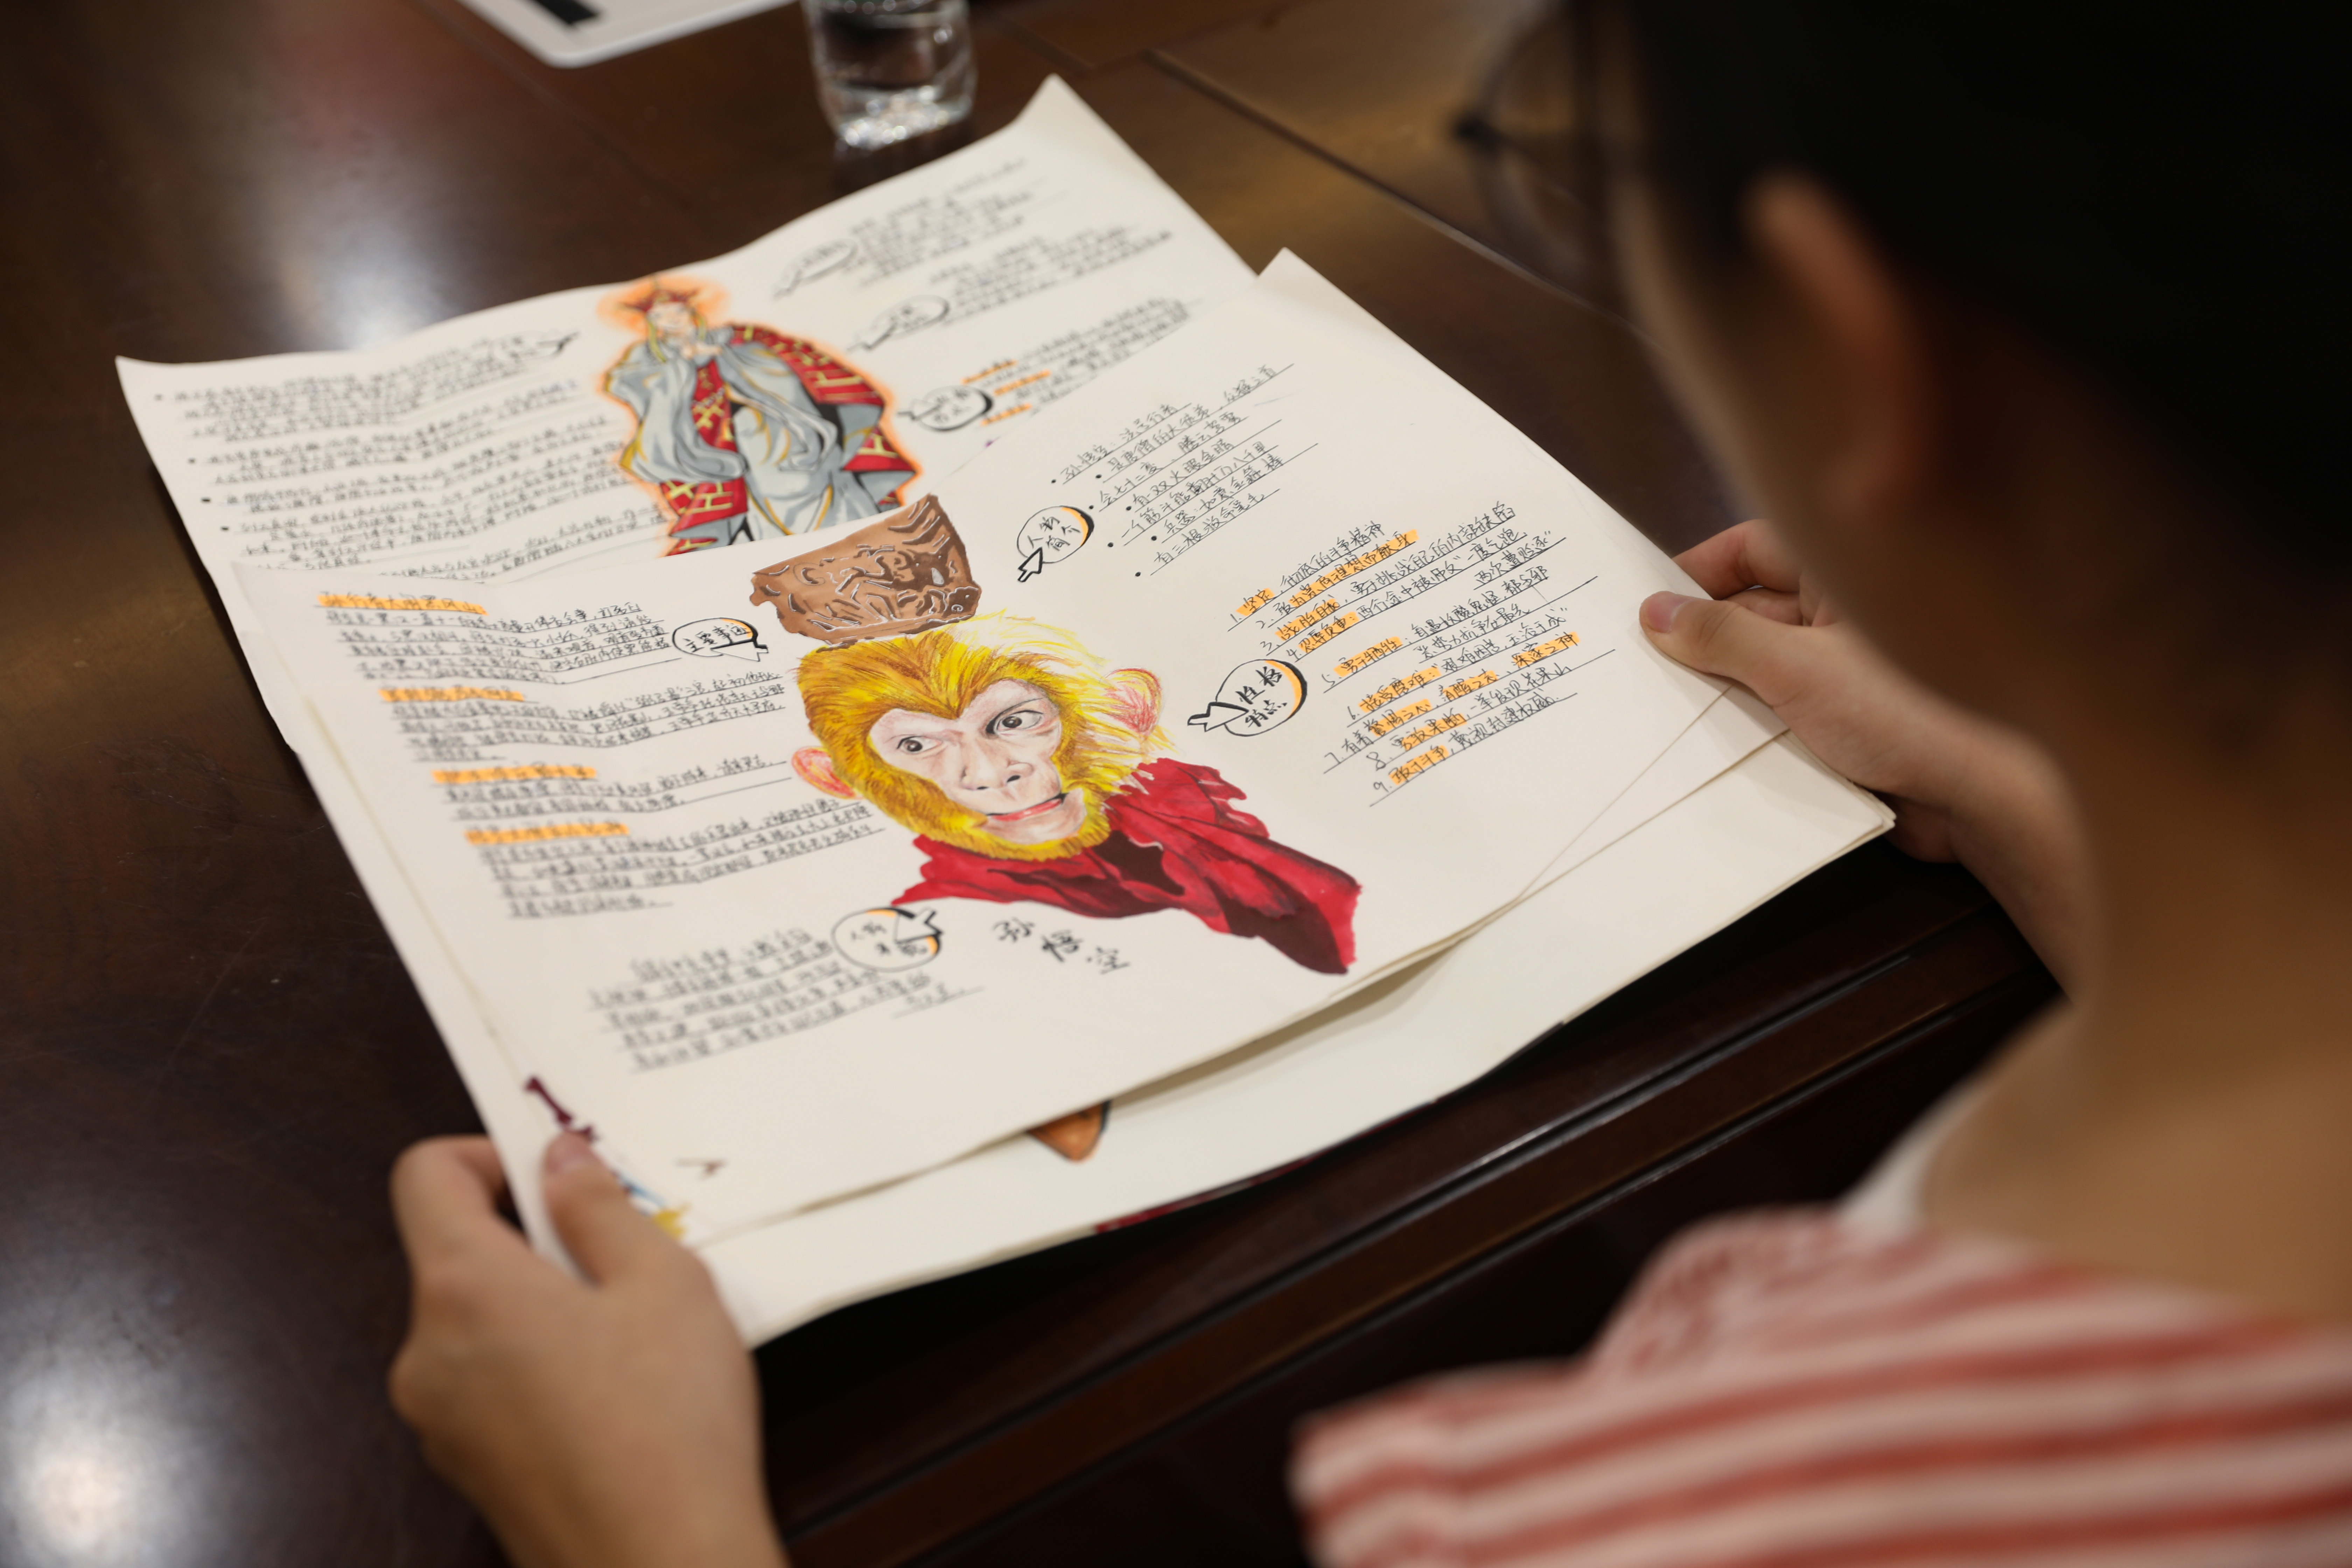 尹靓同学阅读四大名著《西游记》通过思维导图手绘书中的人物孙